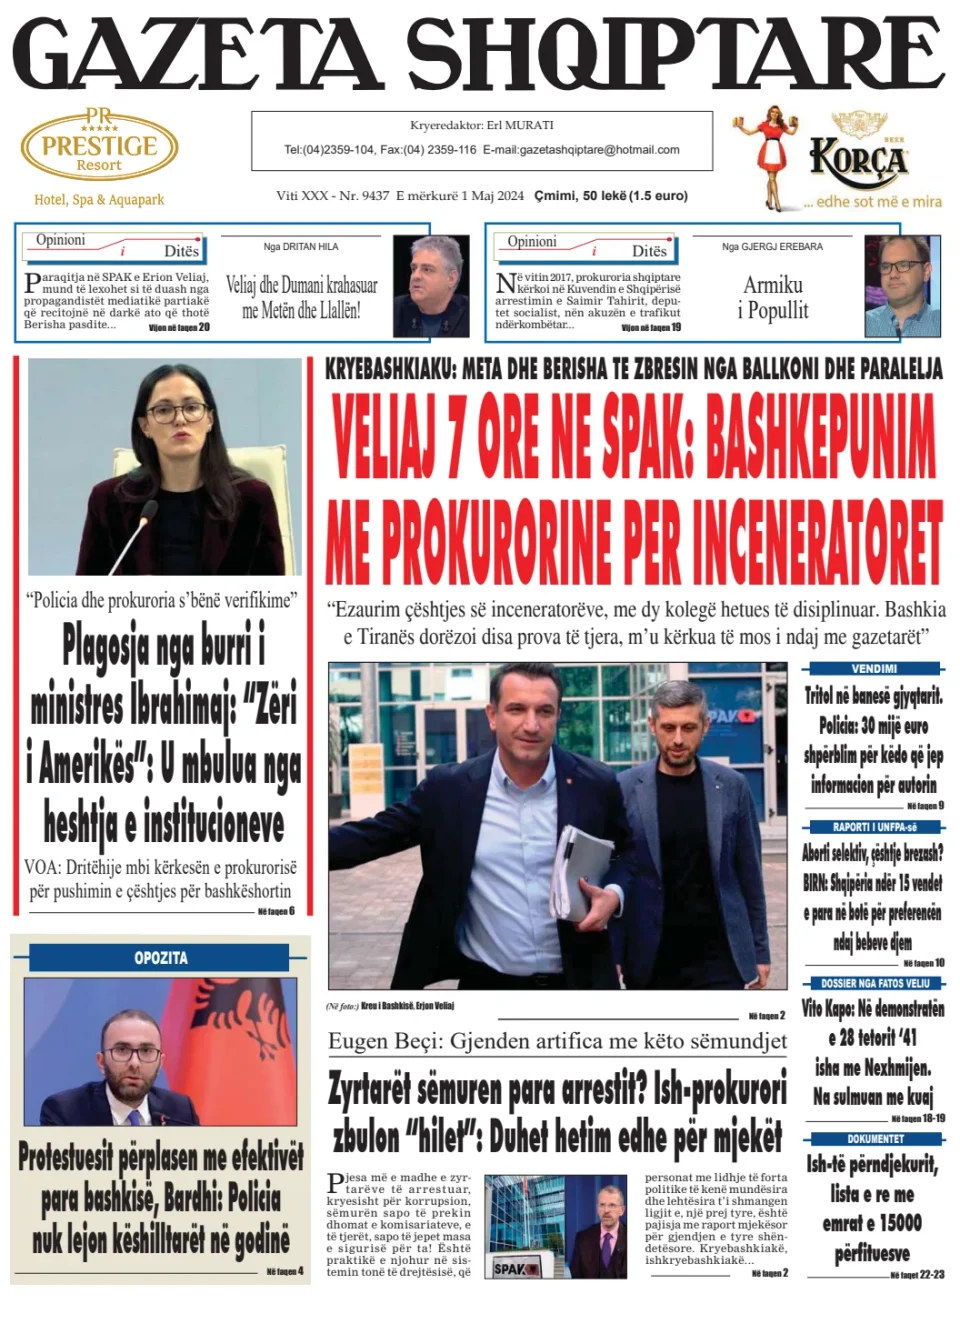 Gazeta Shqiptare